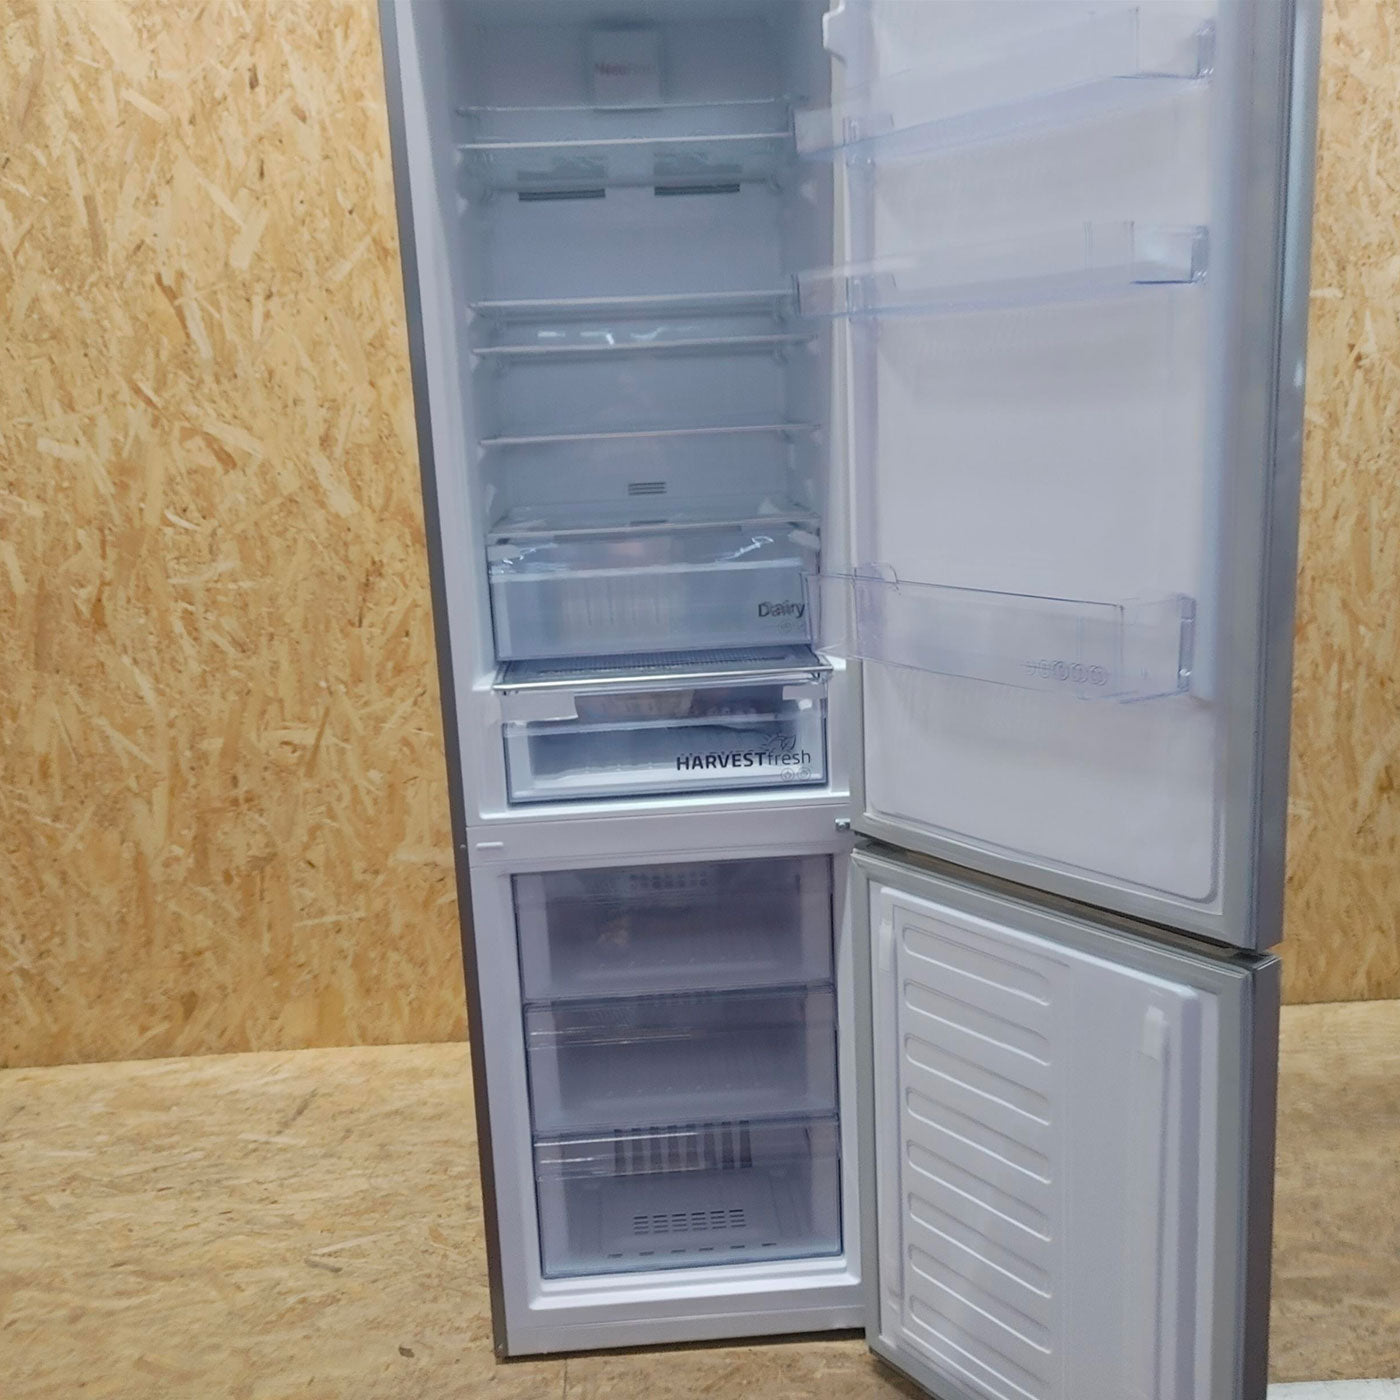 Beko RCNA406E60ZXBHN frigorifero con congelatore Libera installazione 362 L C Metallico